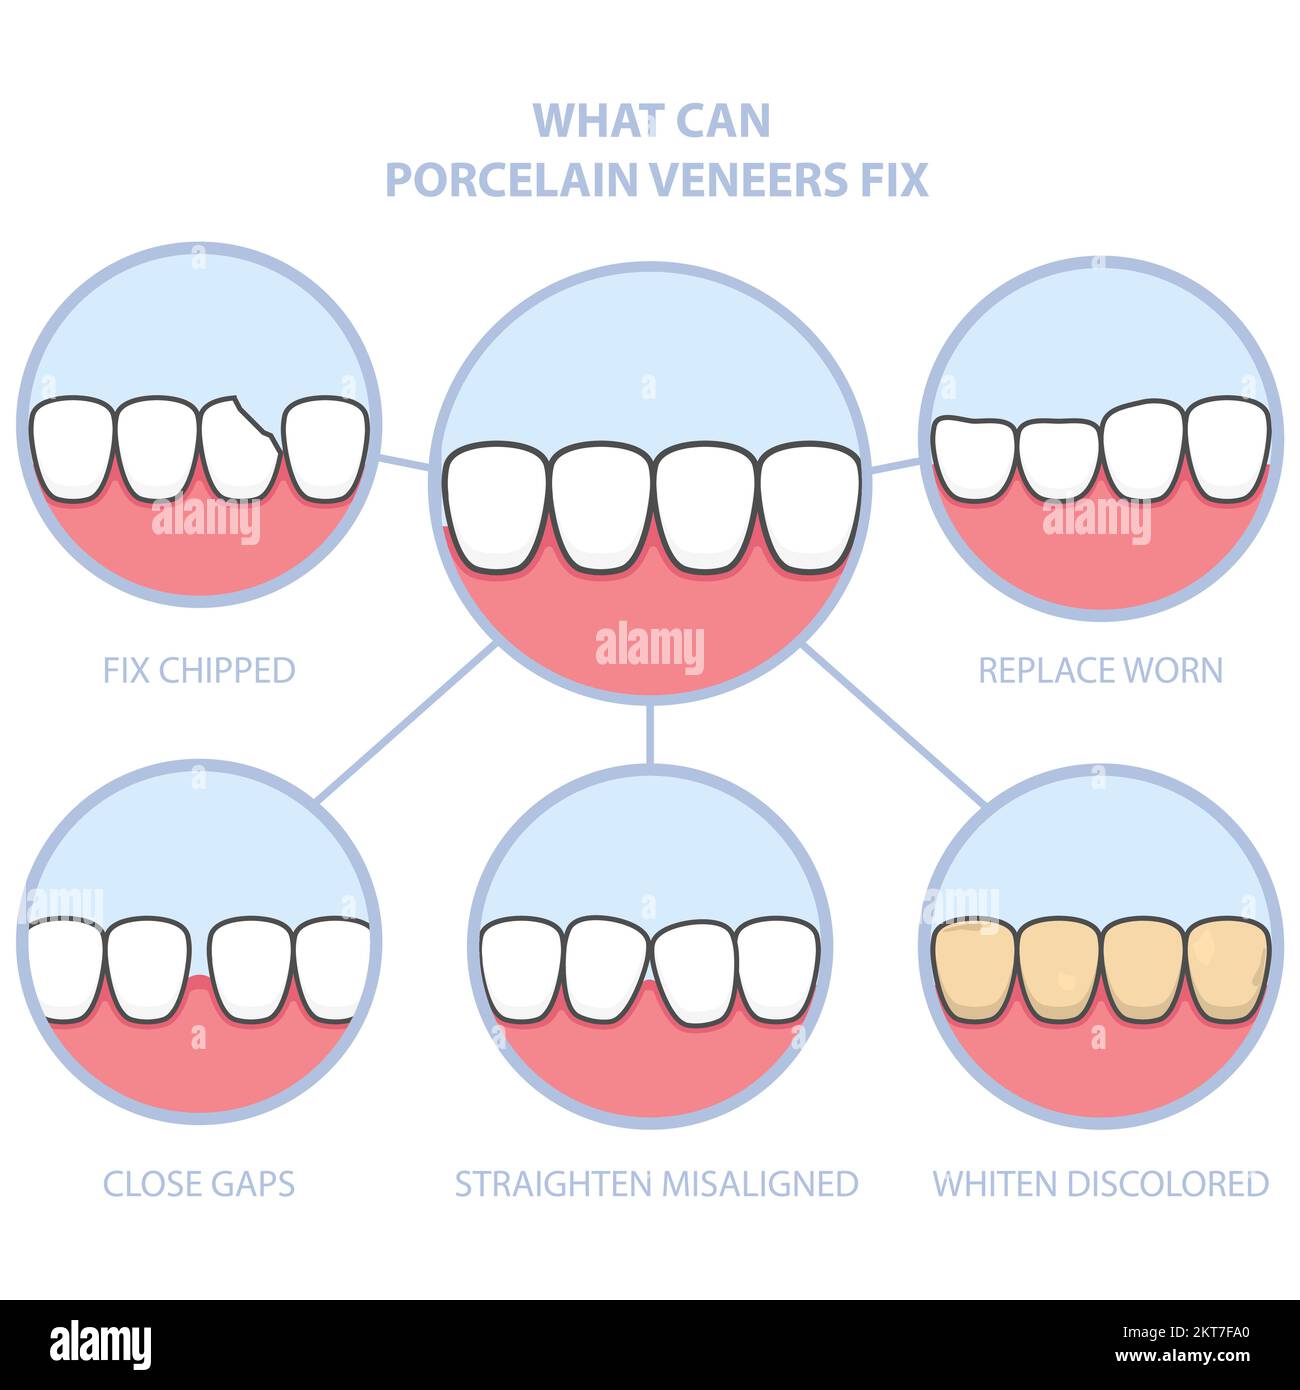 Verschönerung der Zähne und des Lächelns mit zahnärztlichen Keramikfurnier, Zahnreihe fixiert mit Furnier-Abdeckung, vor und nach Zähnen, Vektor Stock Vektor